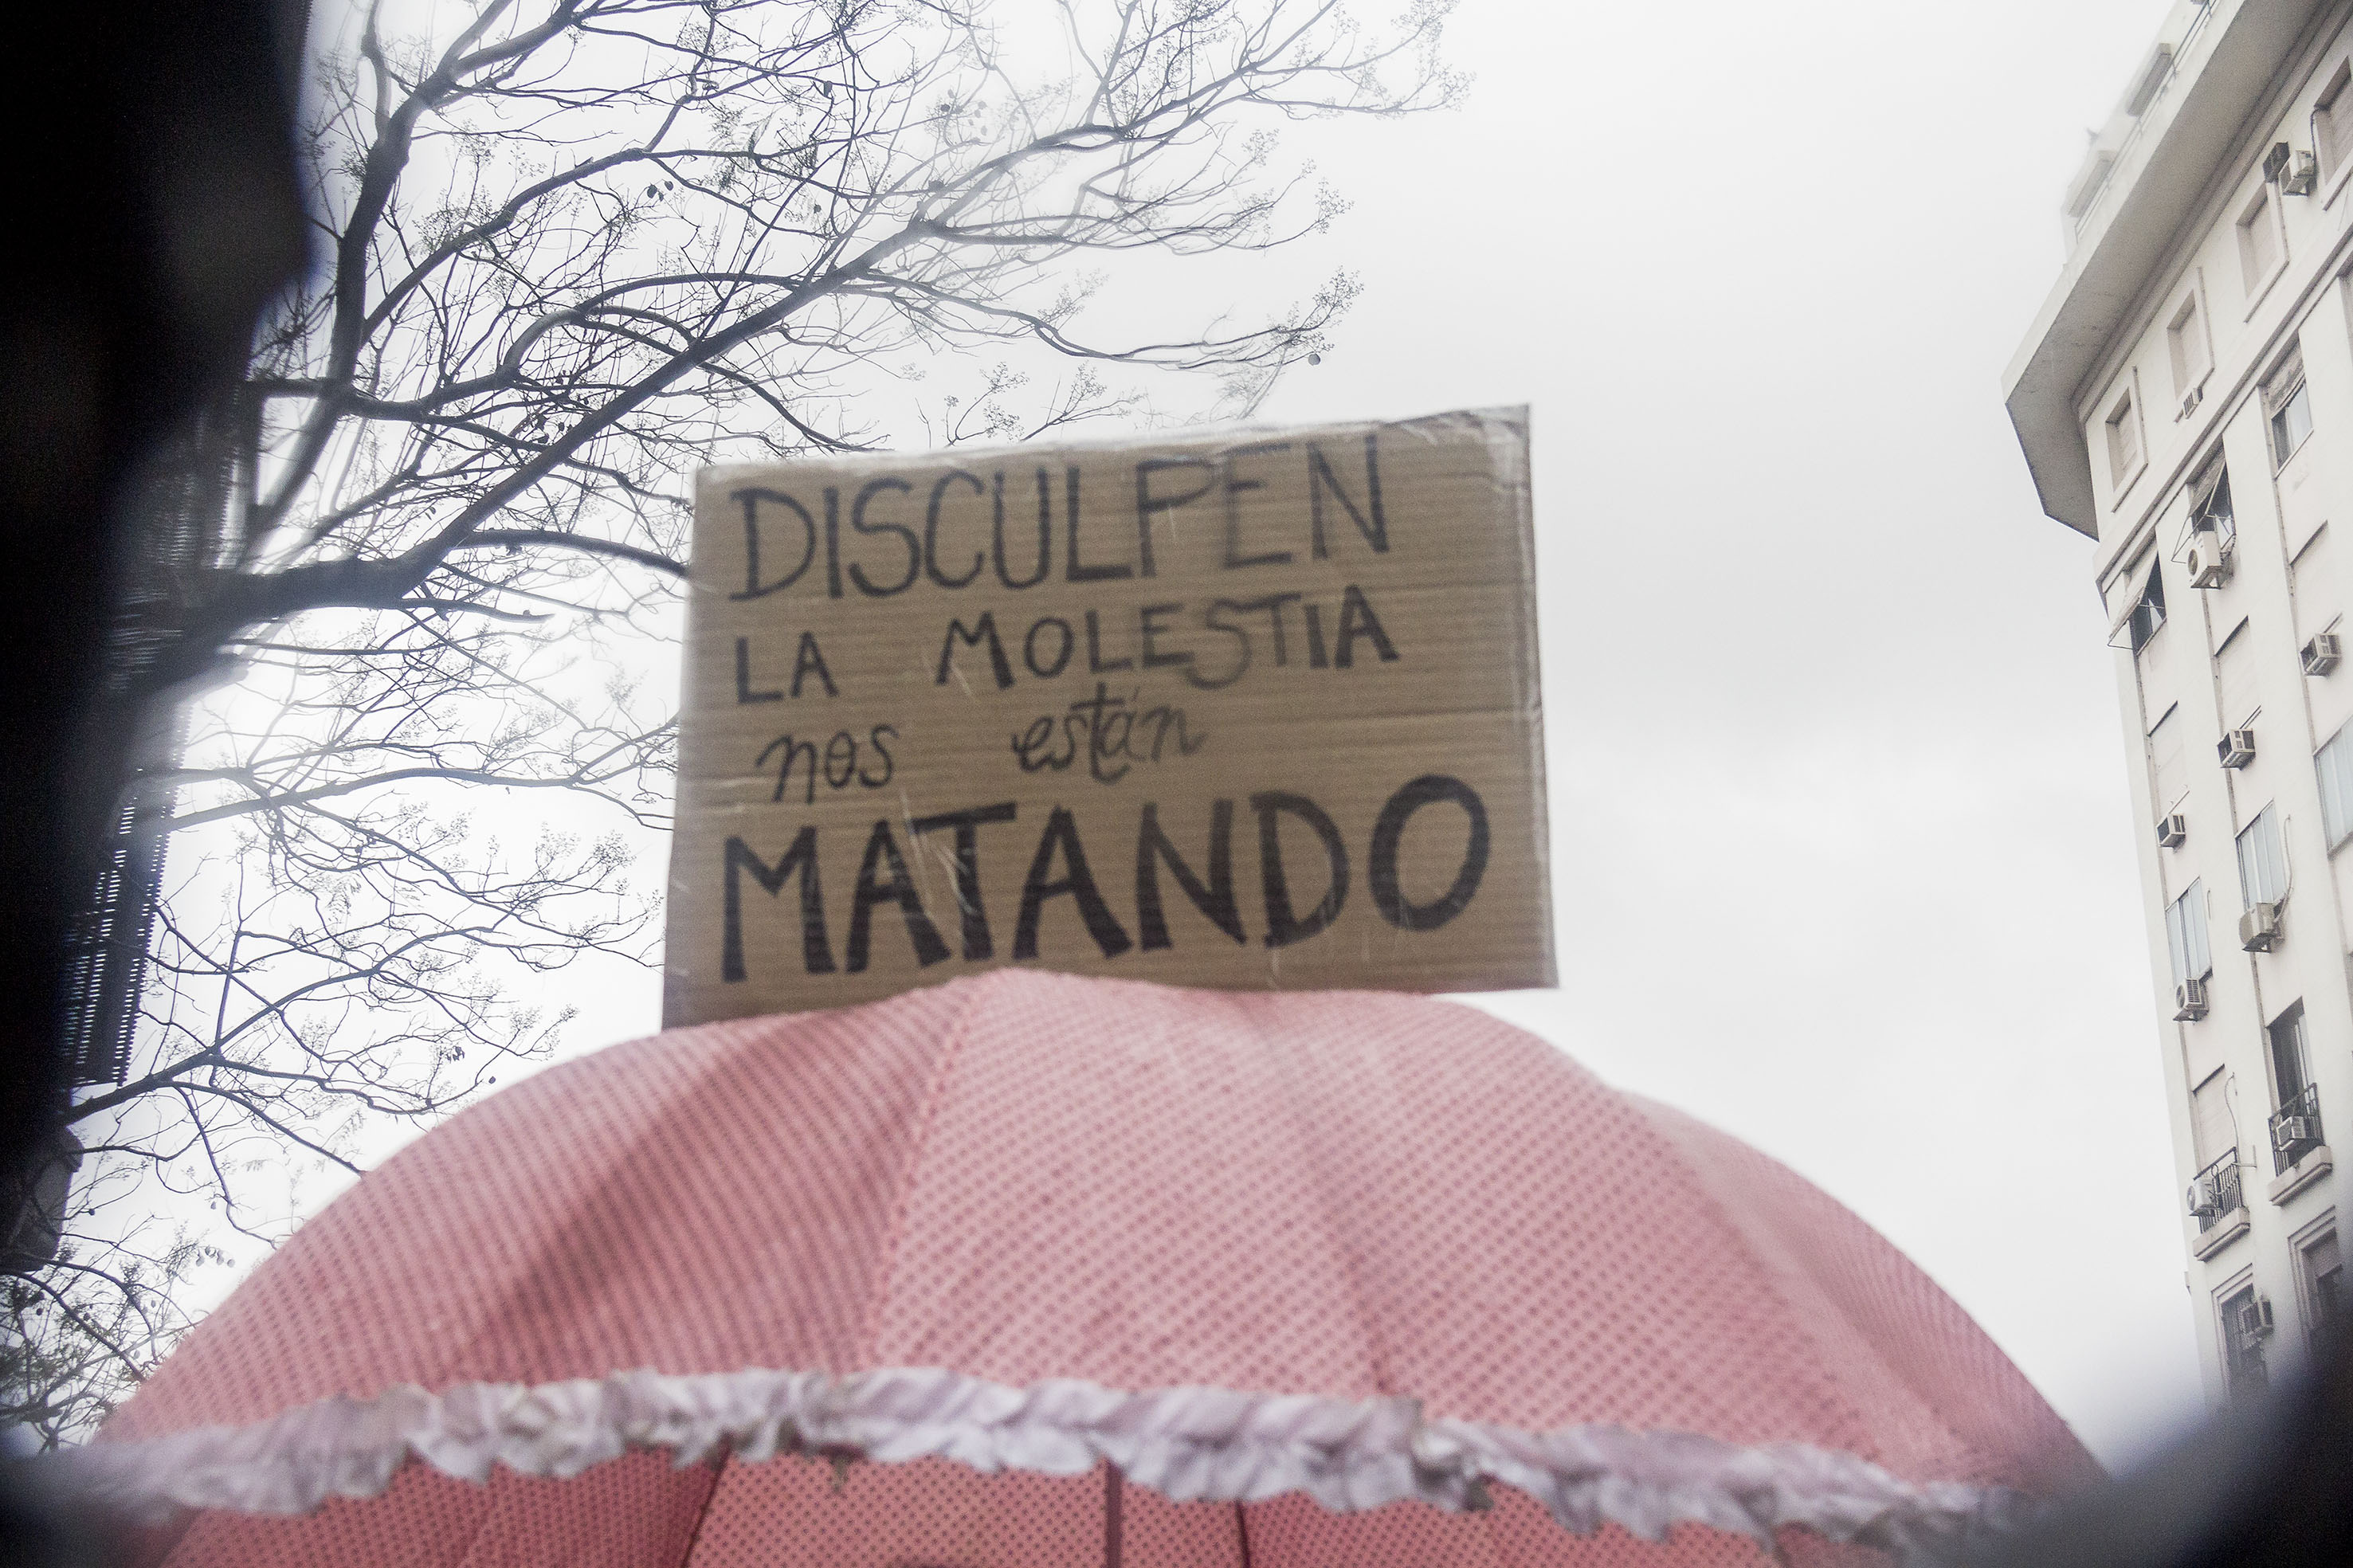 #NosotrasParamos: Marcha contra la violencia de género en Argentina